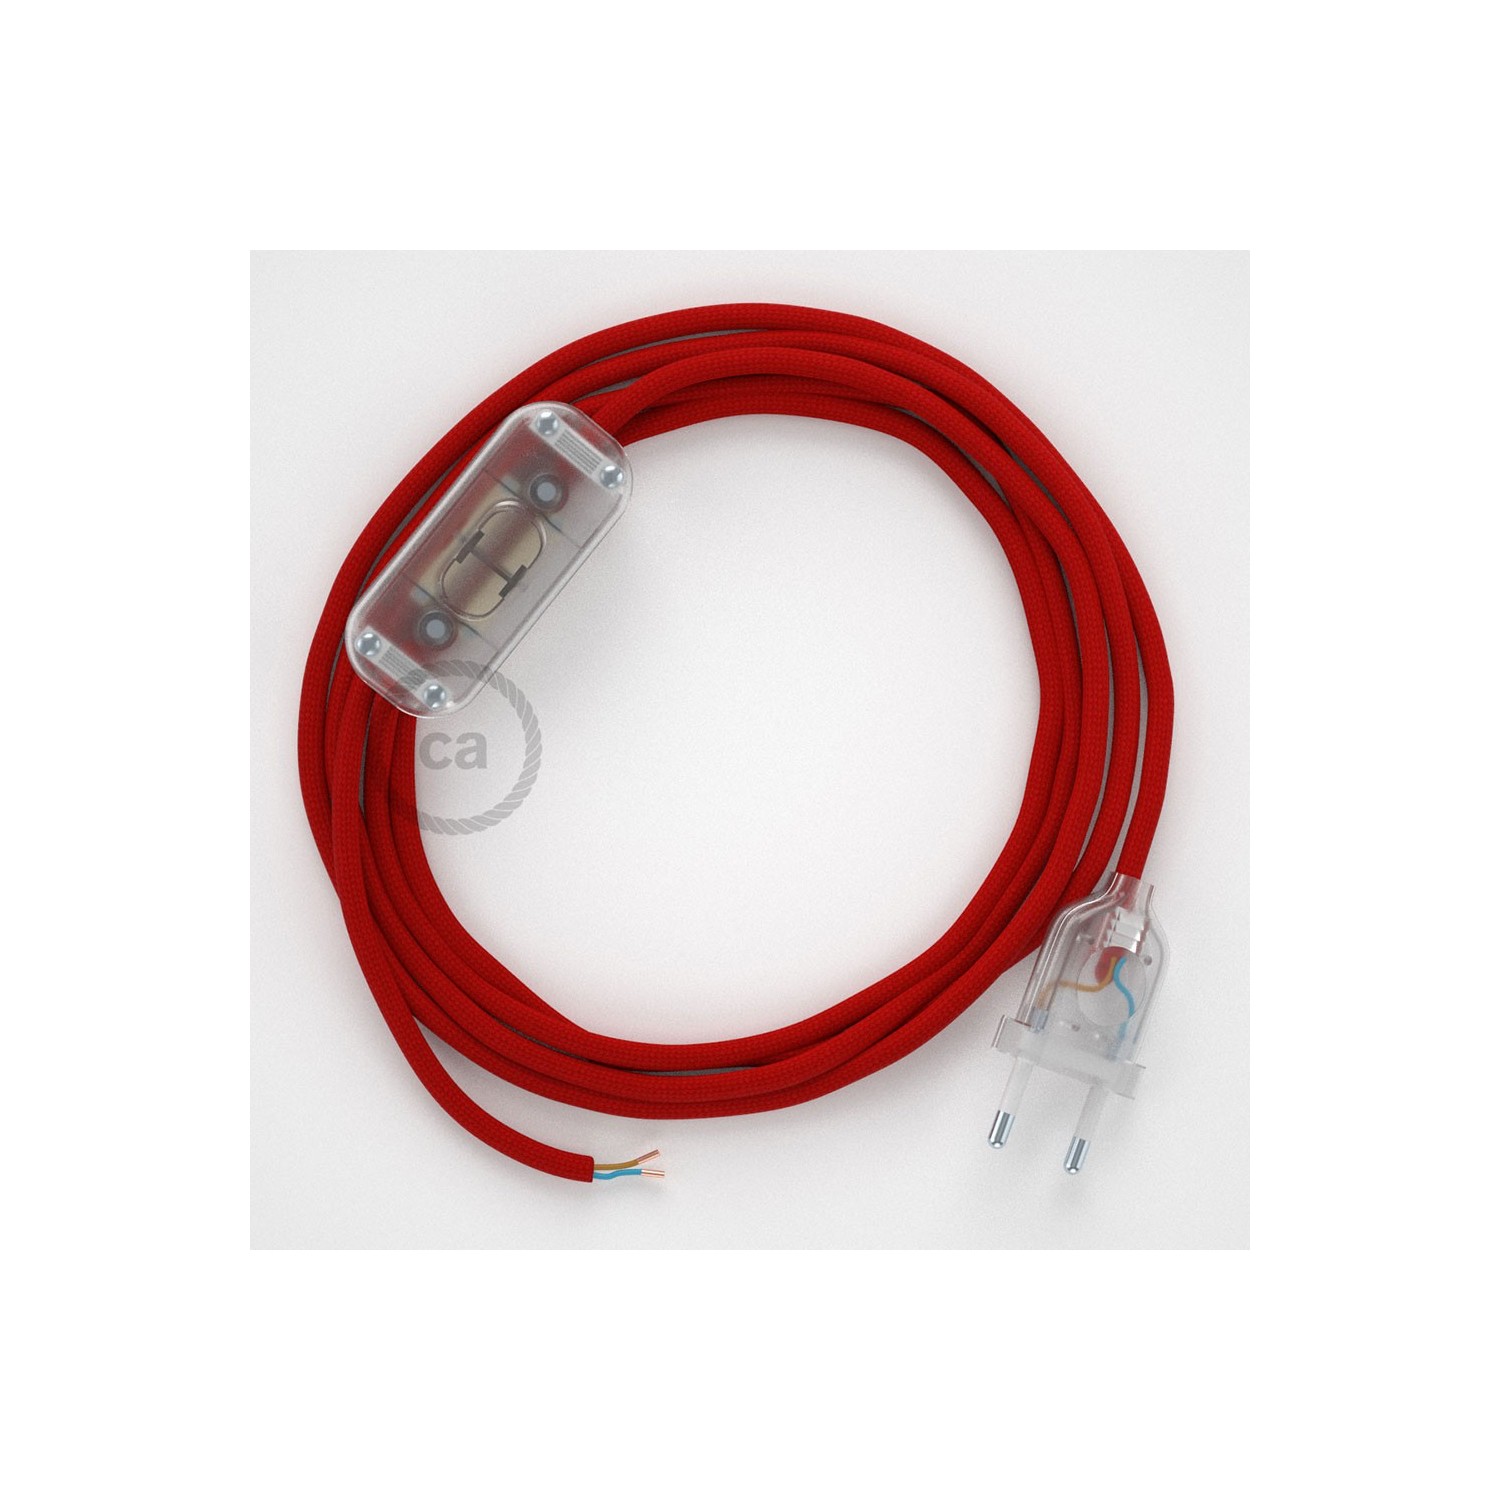 Sladdställ, RM09 Röd Viskos 1,80 m. Välj färg på strömbrytare och kontakt